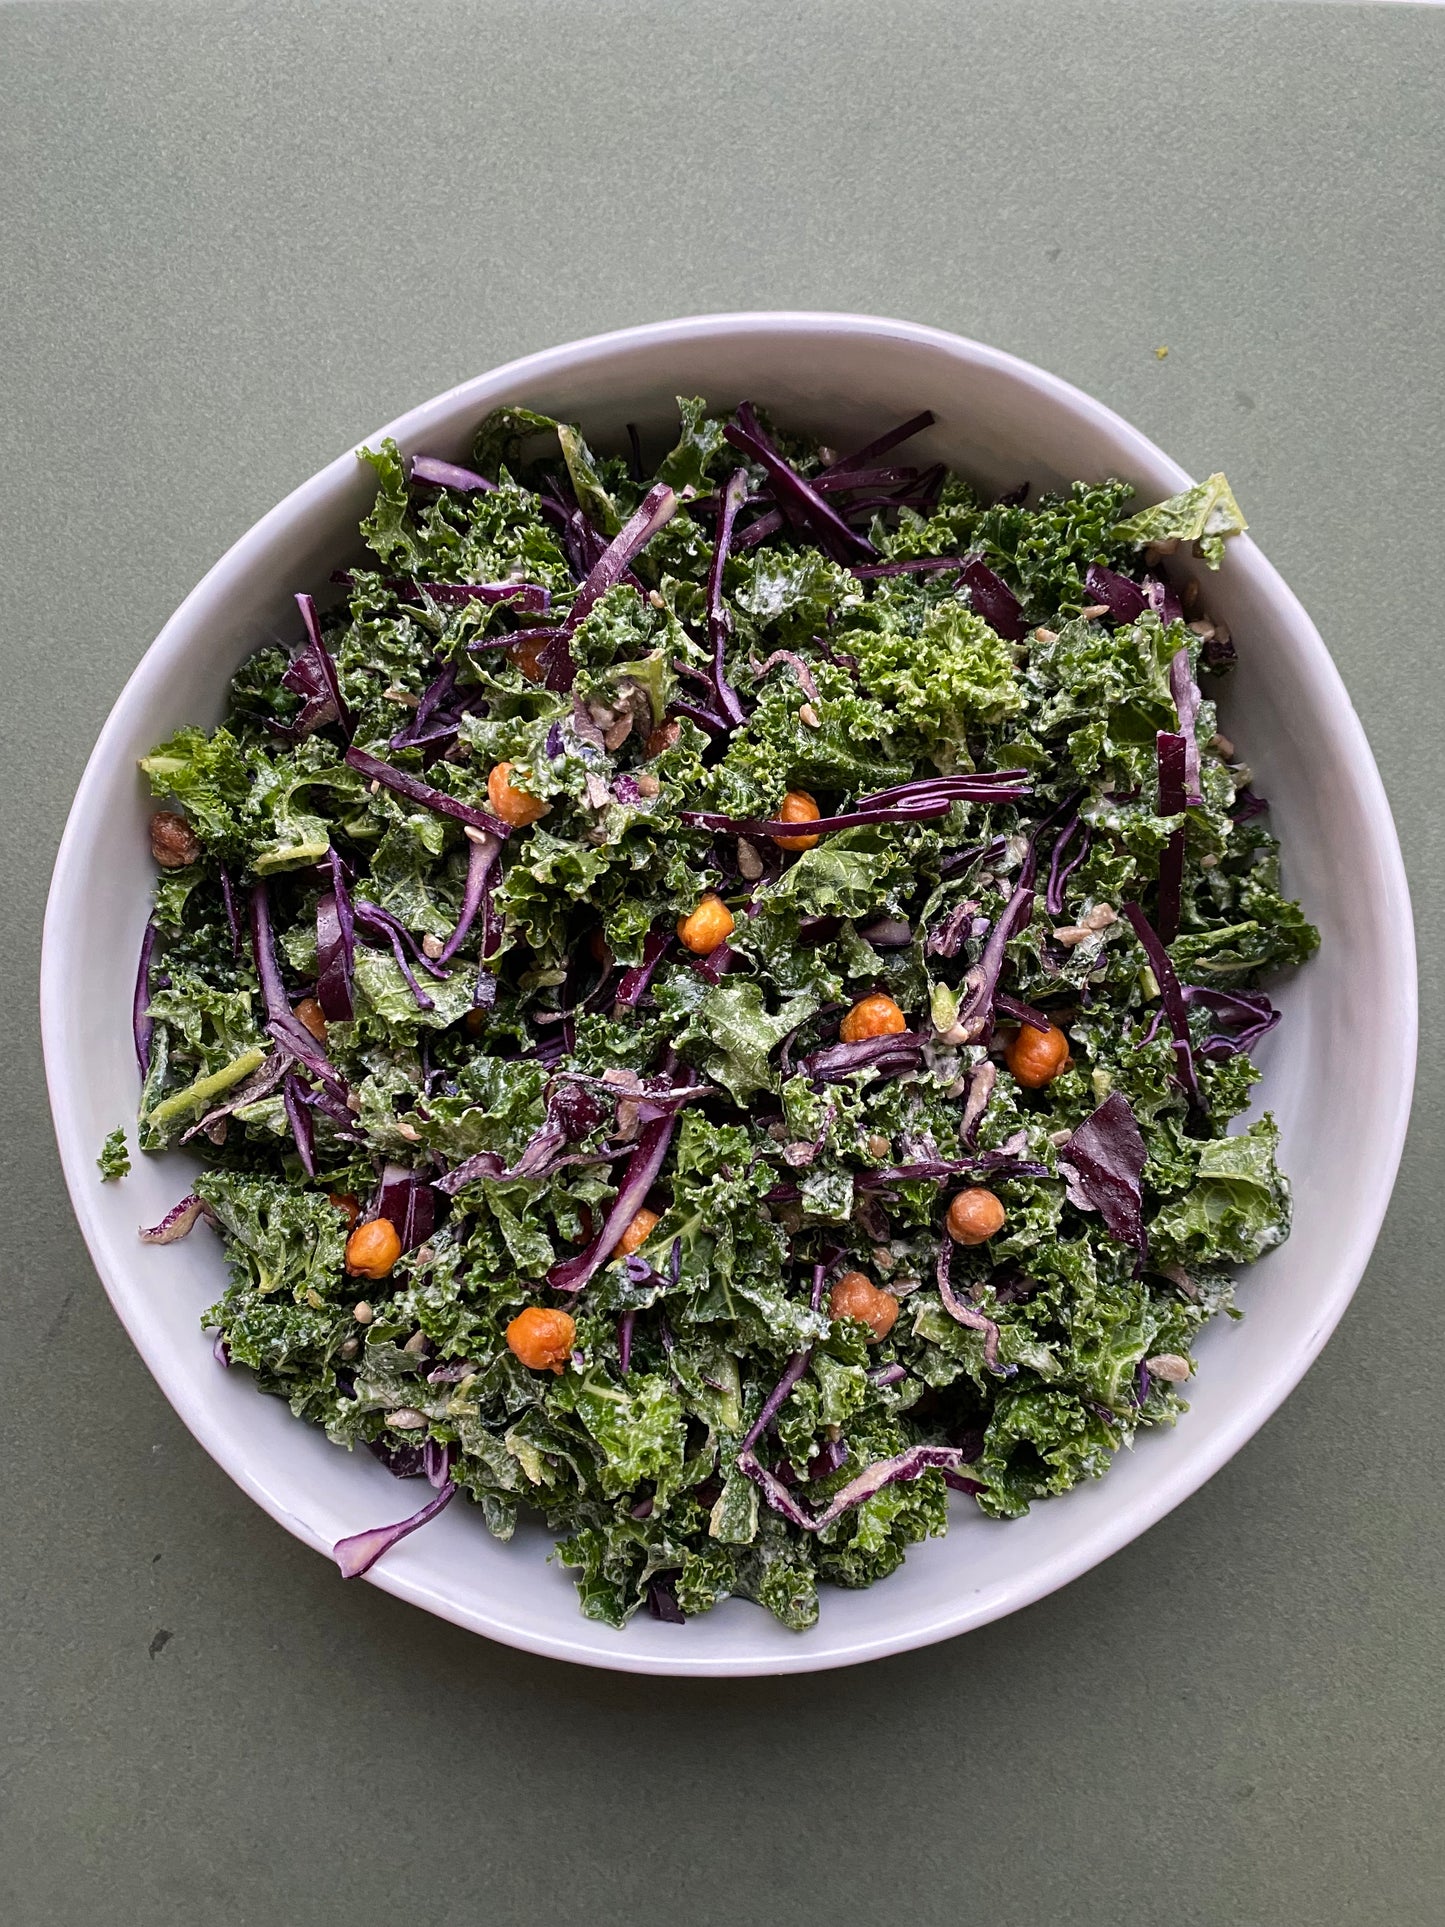 Kale Tahini Salad with Crispy Chickpeas and Sunflower Seeds